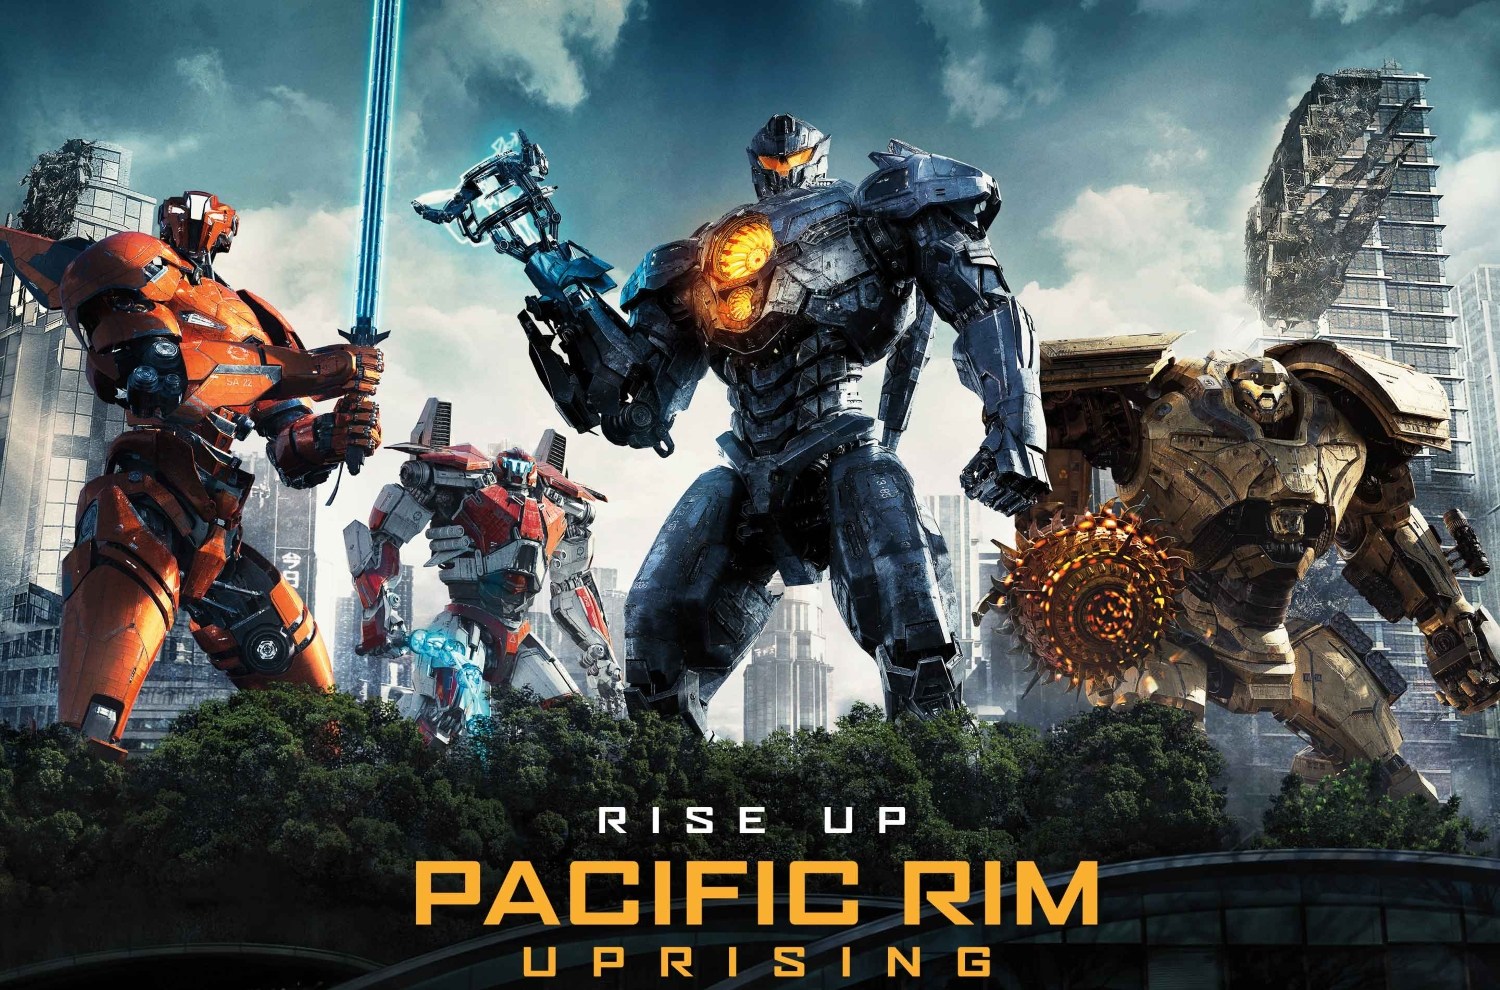 pacific rim 2 - Rise Up Pacific Rim Uprising